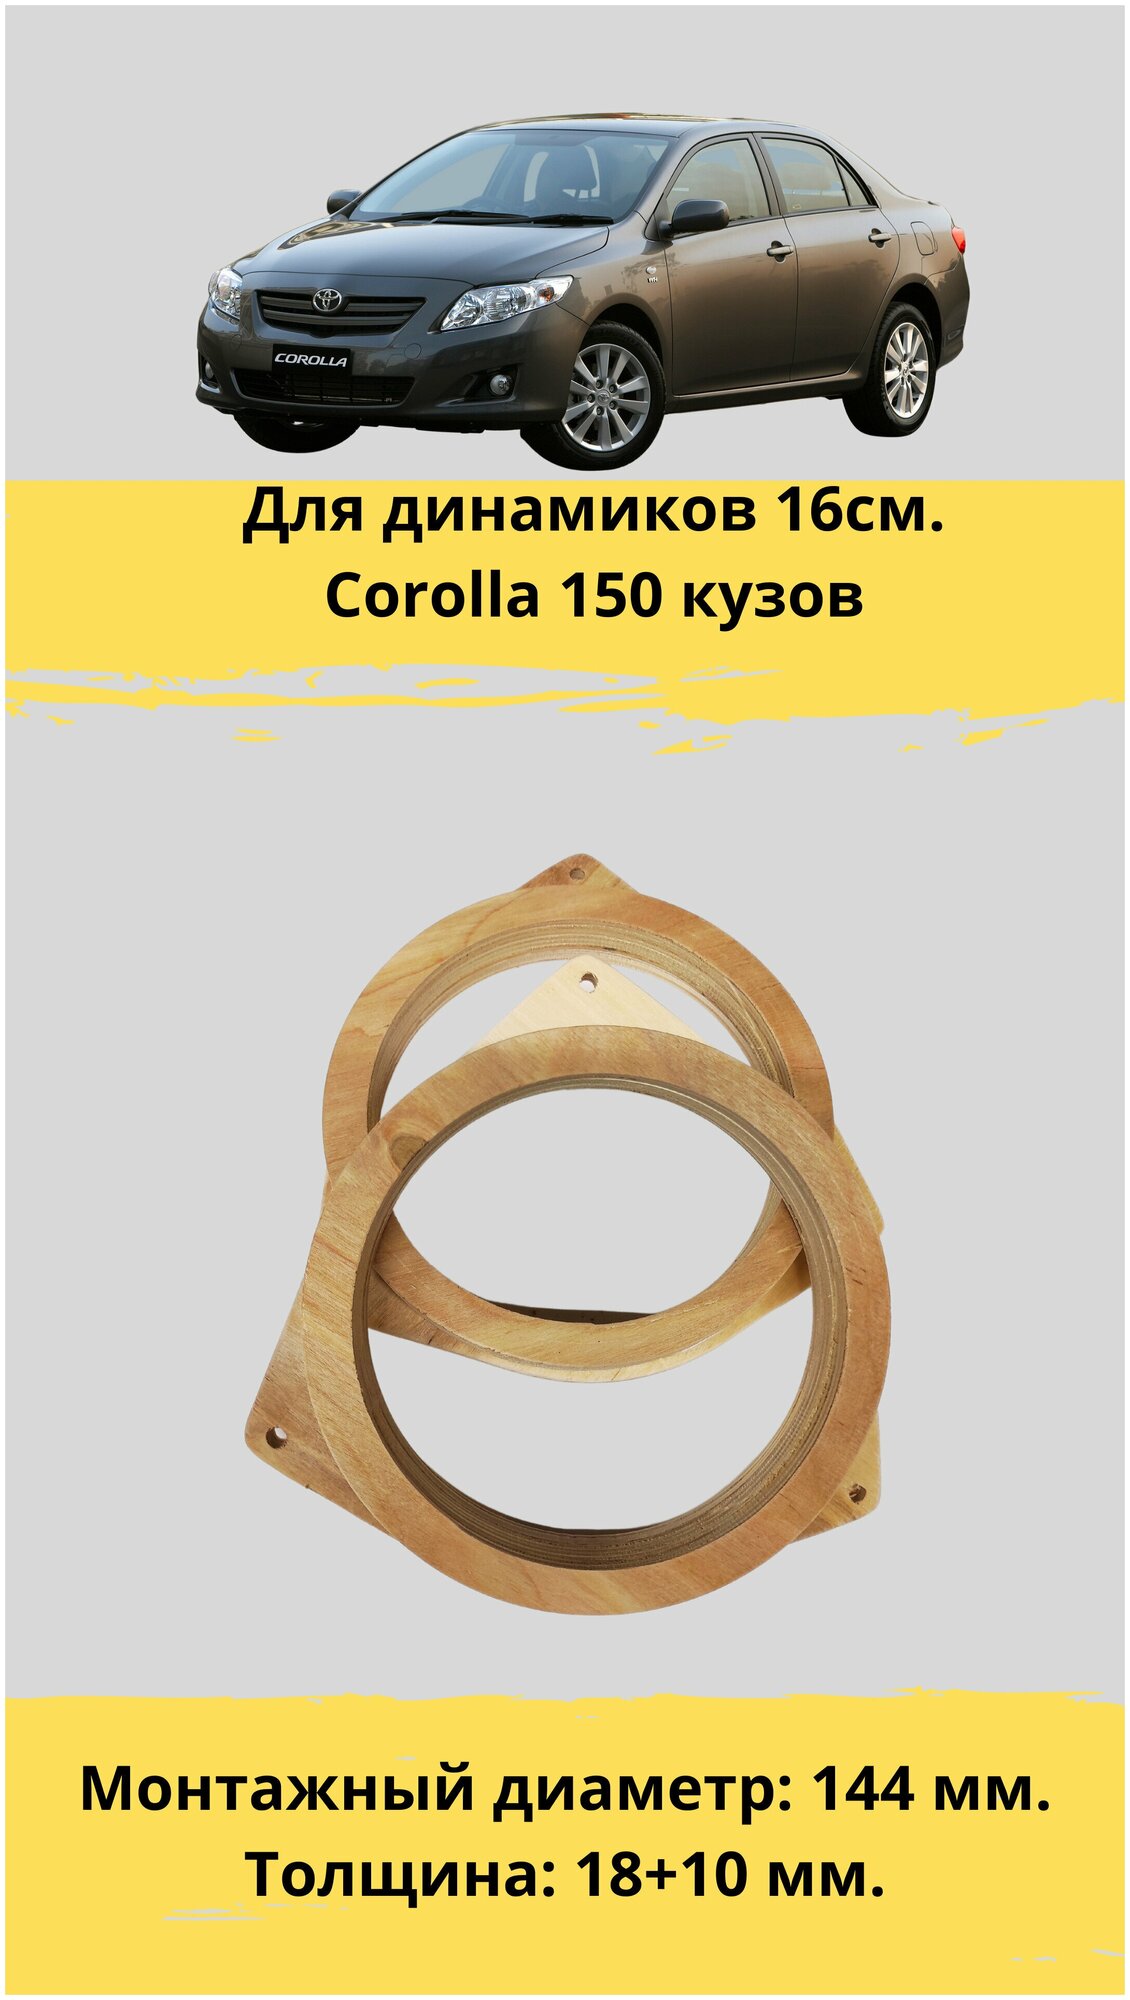 Проставочные кольца под установку динамиков 16 см. для автомобиля Toyota corolla(монтажный диаметр 148 мм.)